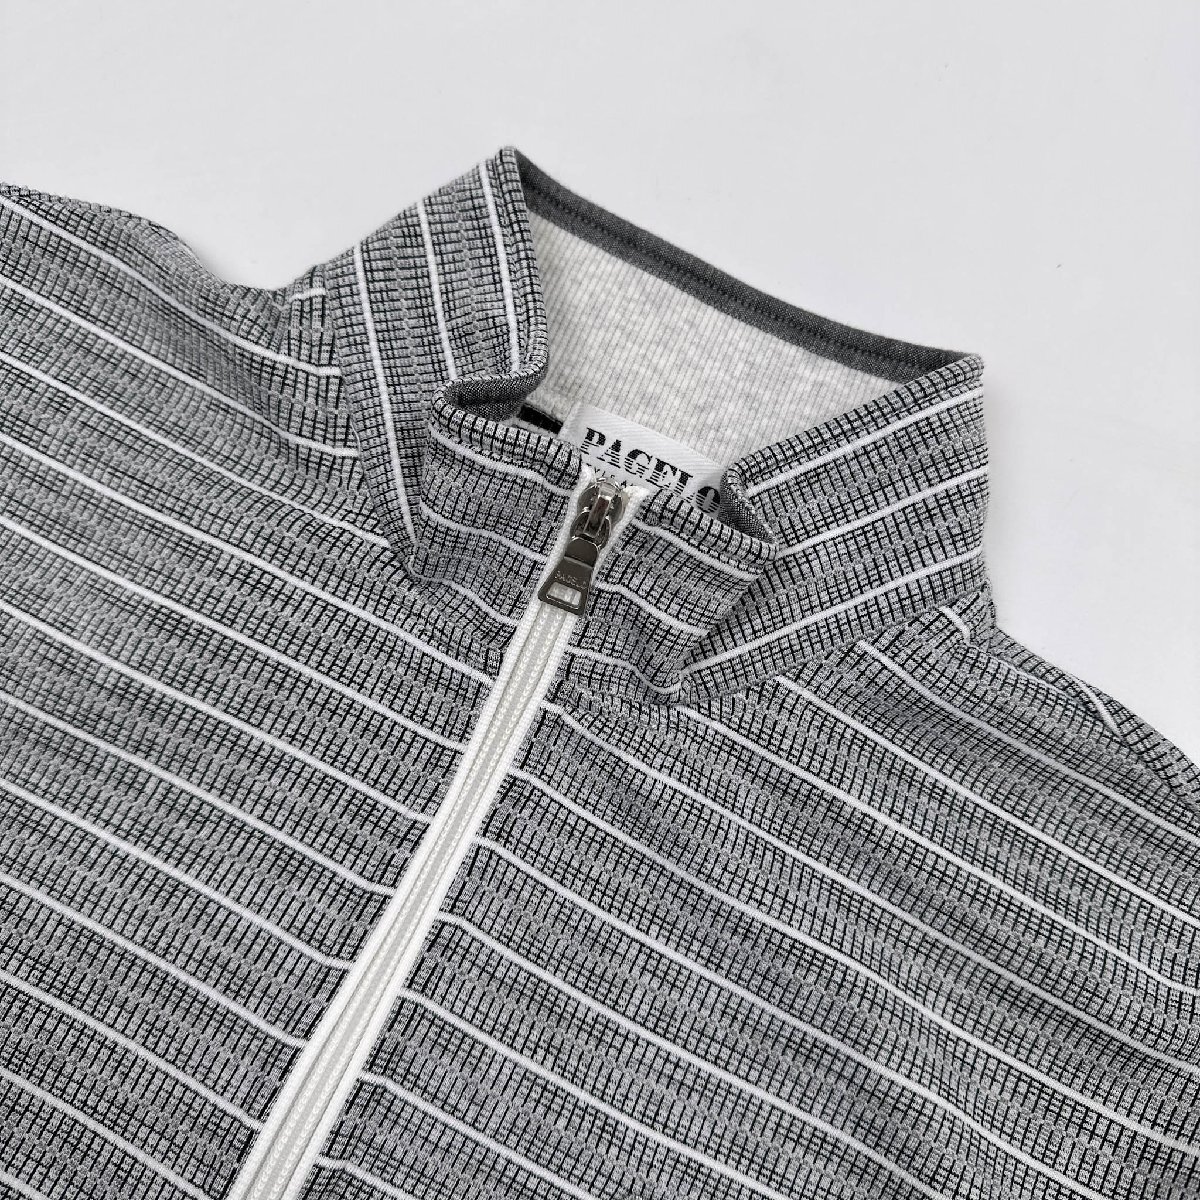  прекрасный товар *PAGELO Pajero вышивка дизайн рубашка-поло с коротким рукавом L размер / серый серия мужской джентльмен Anne jero сделано в Японии 